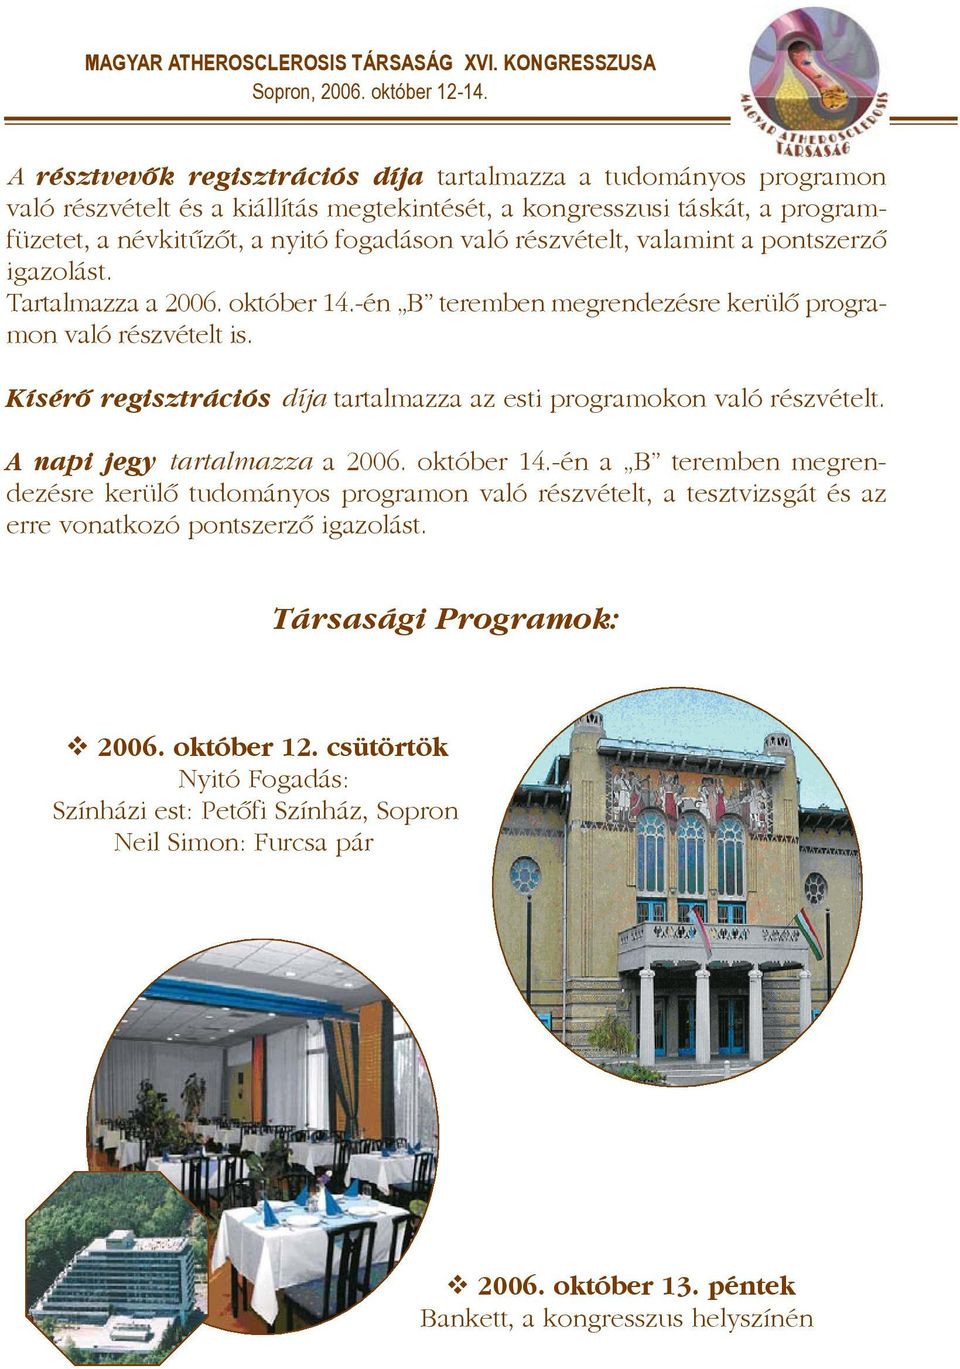 Kísérõ regisztrációs díja tartalmazza az esti programokon való részvételt. A napi jegy tartalmazza a 2006. október 14.